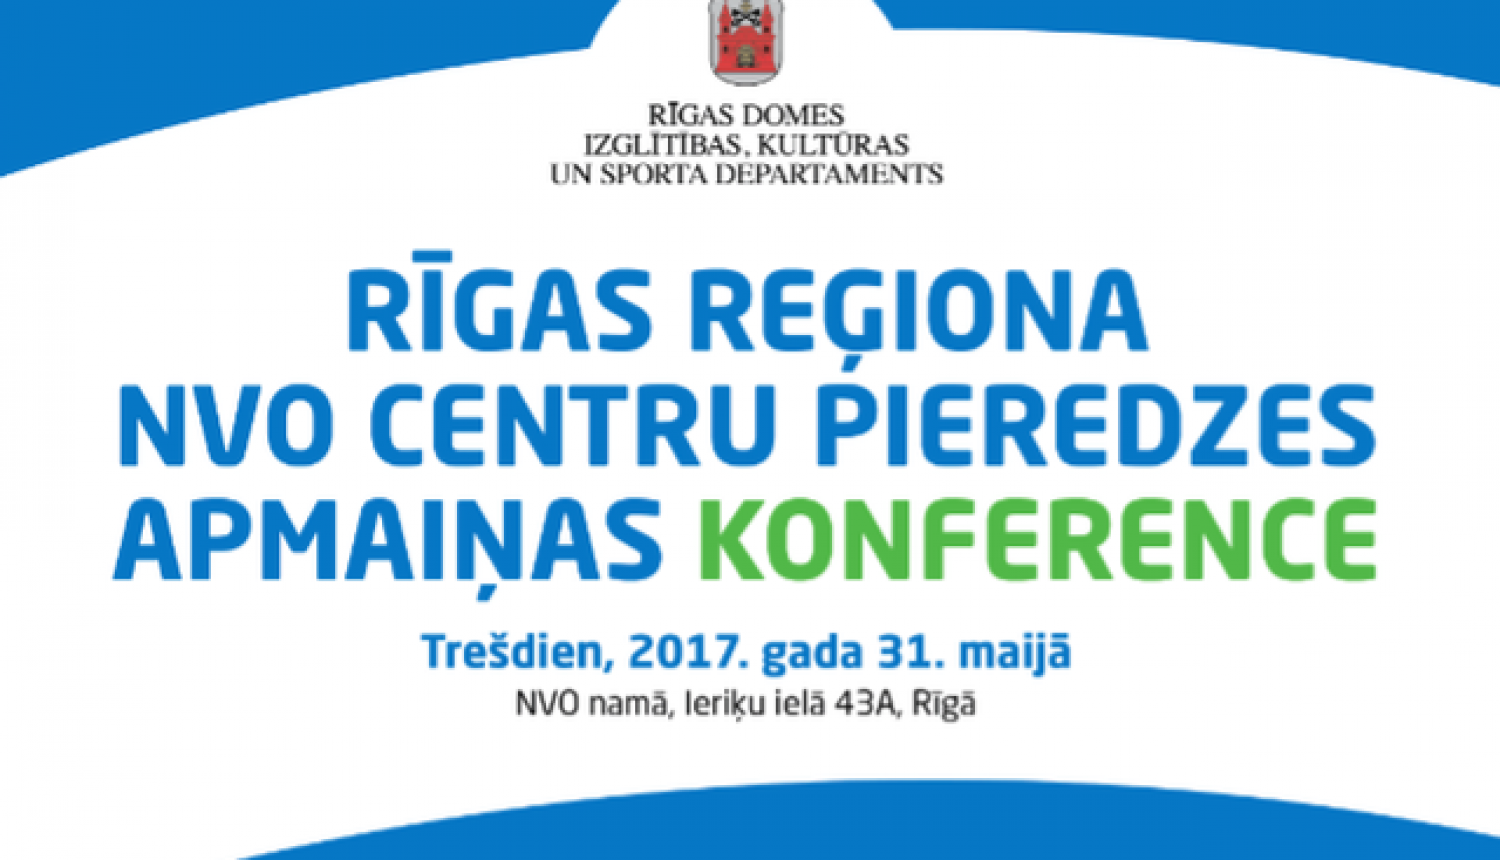 Pieredzes apmaiņas konferencē tiksies Rīgas reģiona nevalstisko organizāciju un pašvaldību pārstāvji